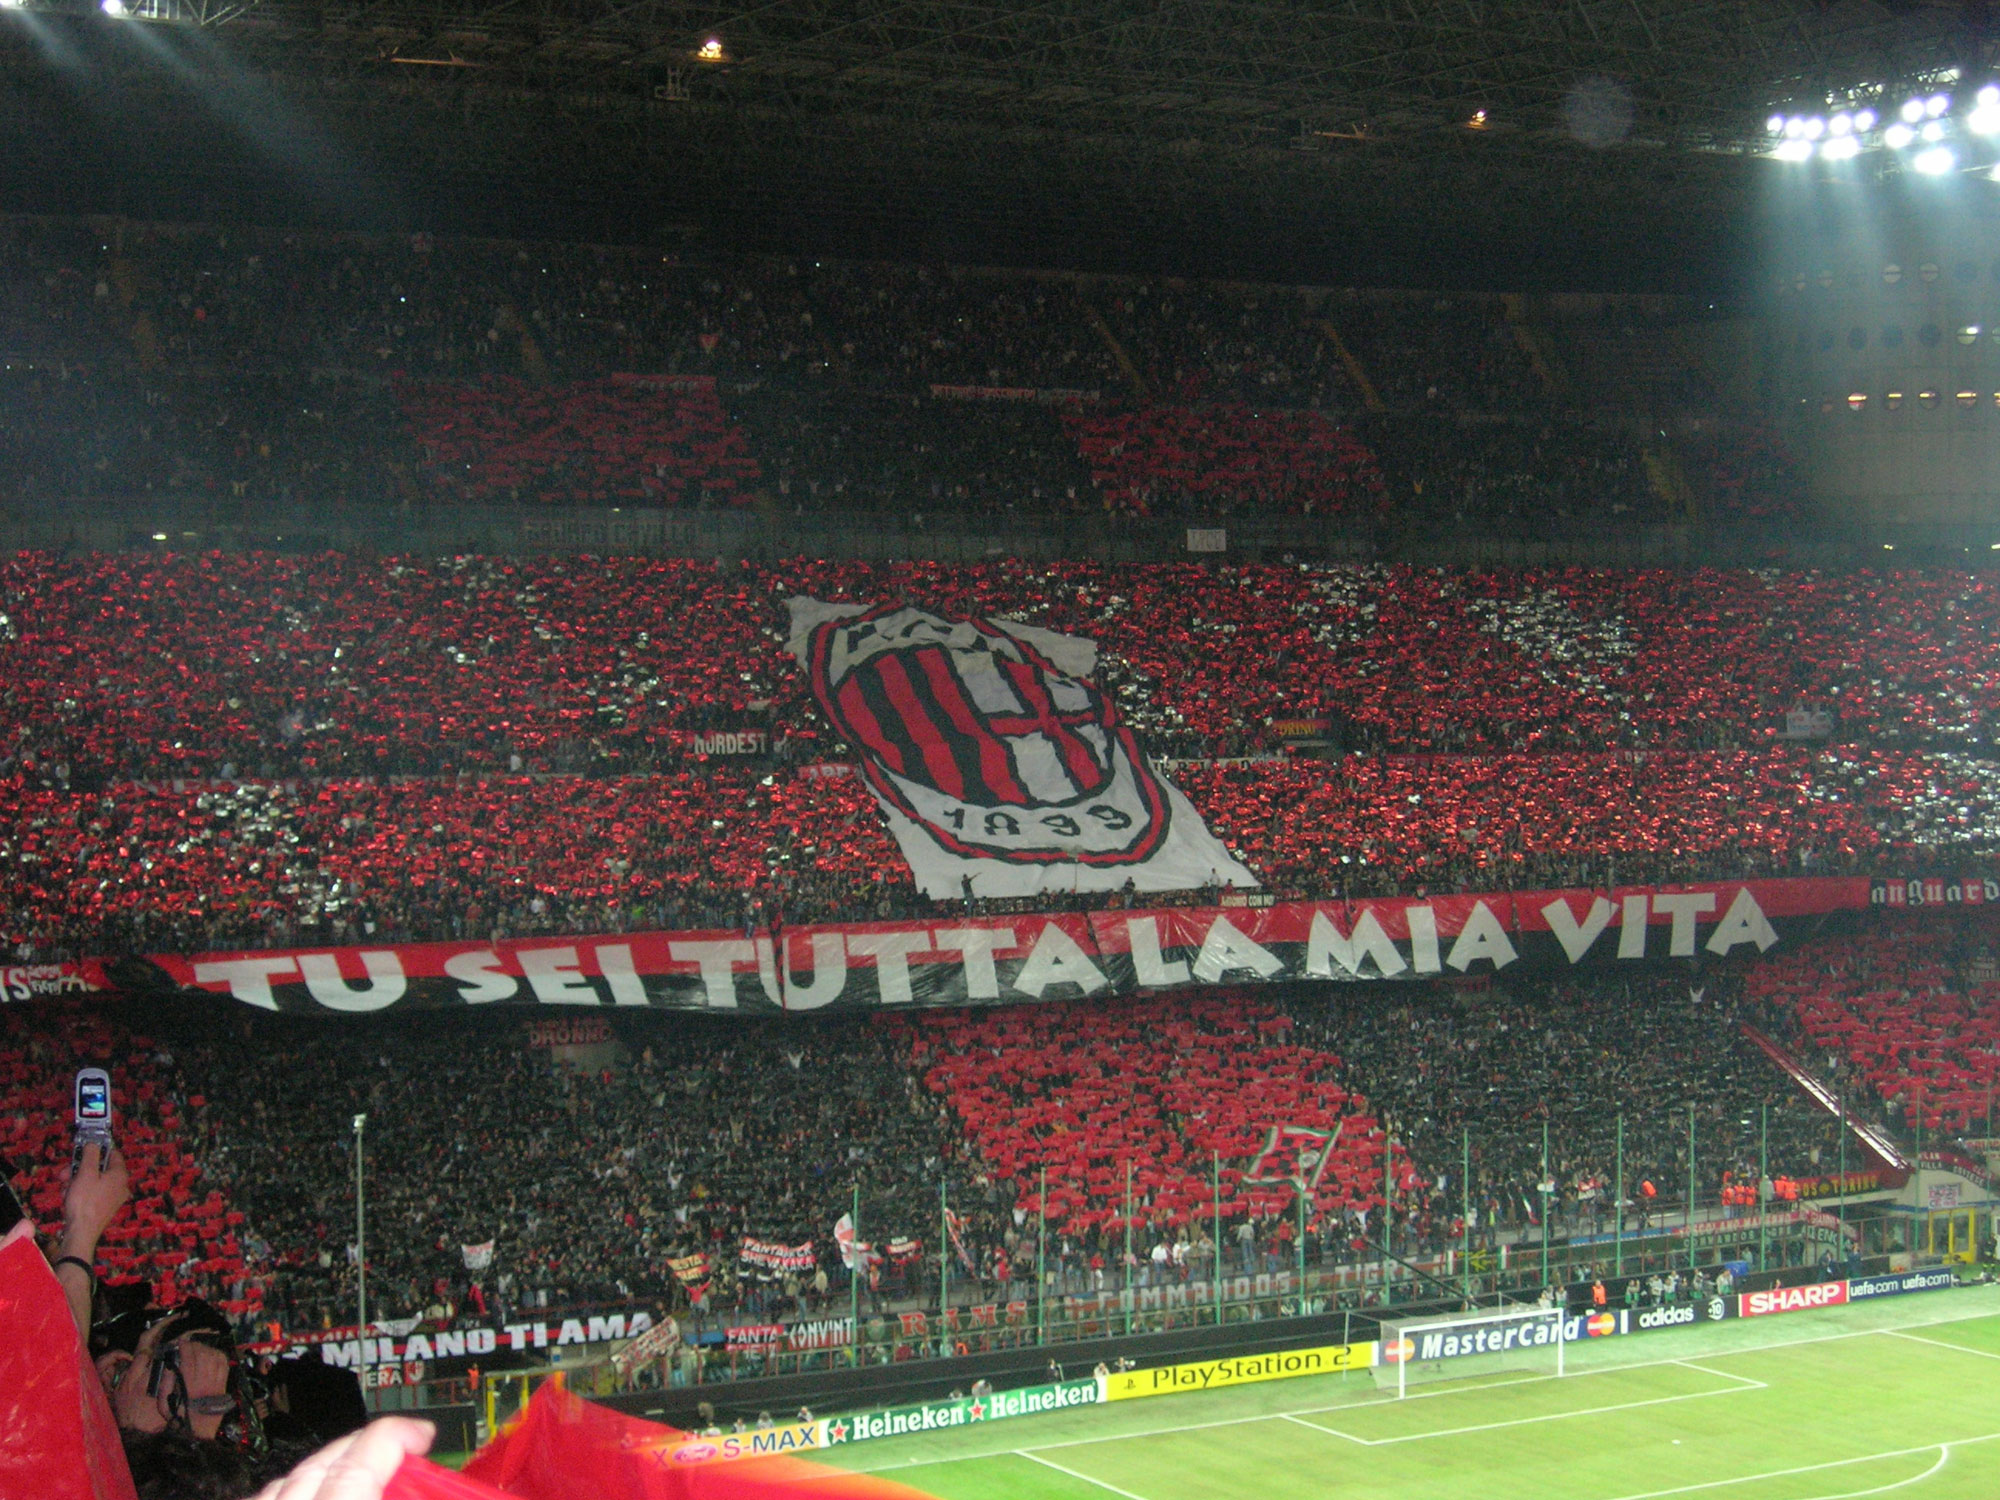 Gilardino sicuro: “Scudetto a Inter o Milan? I favoriti restano loro!”